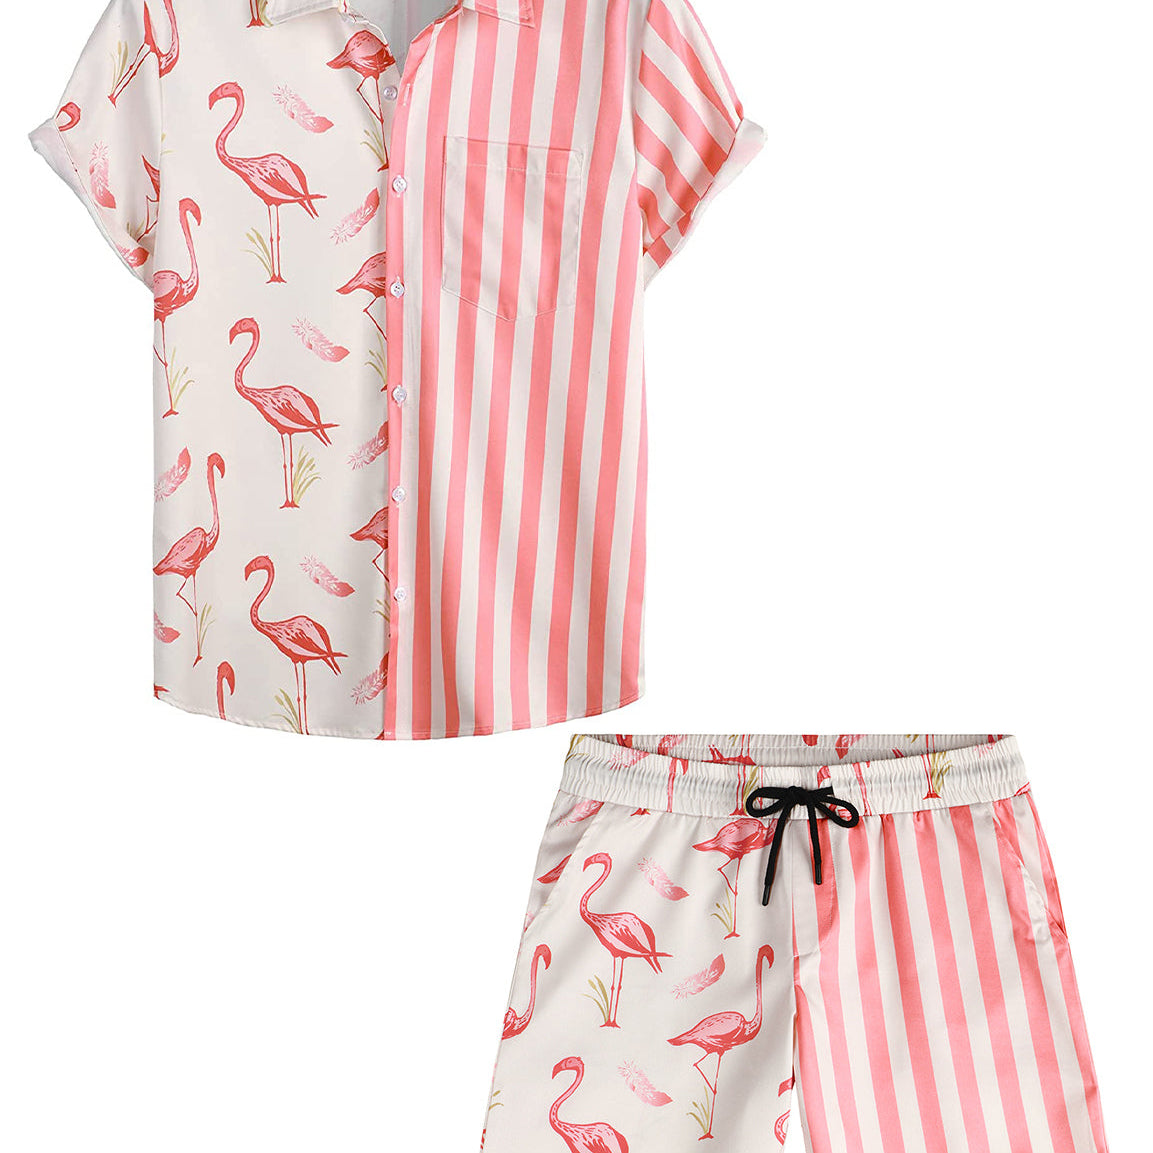 Costume de vacances imprimé flamant rose pour hommes, manches courtes, poche, ensemble chemise et Short assortis